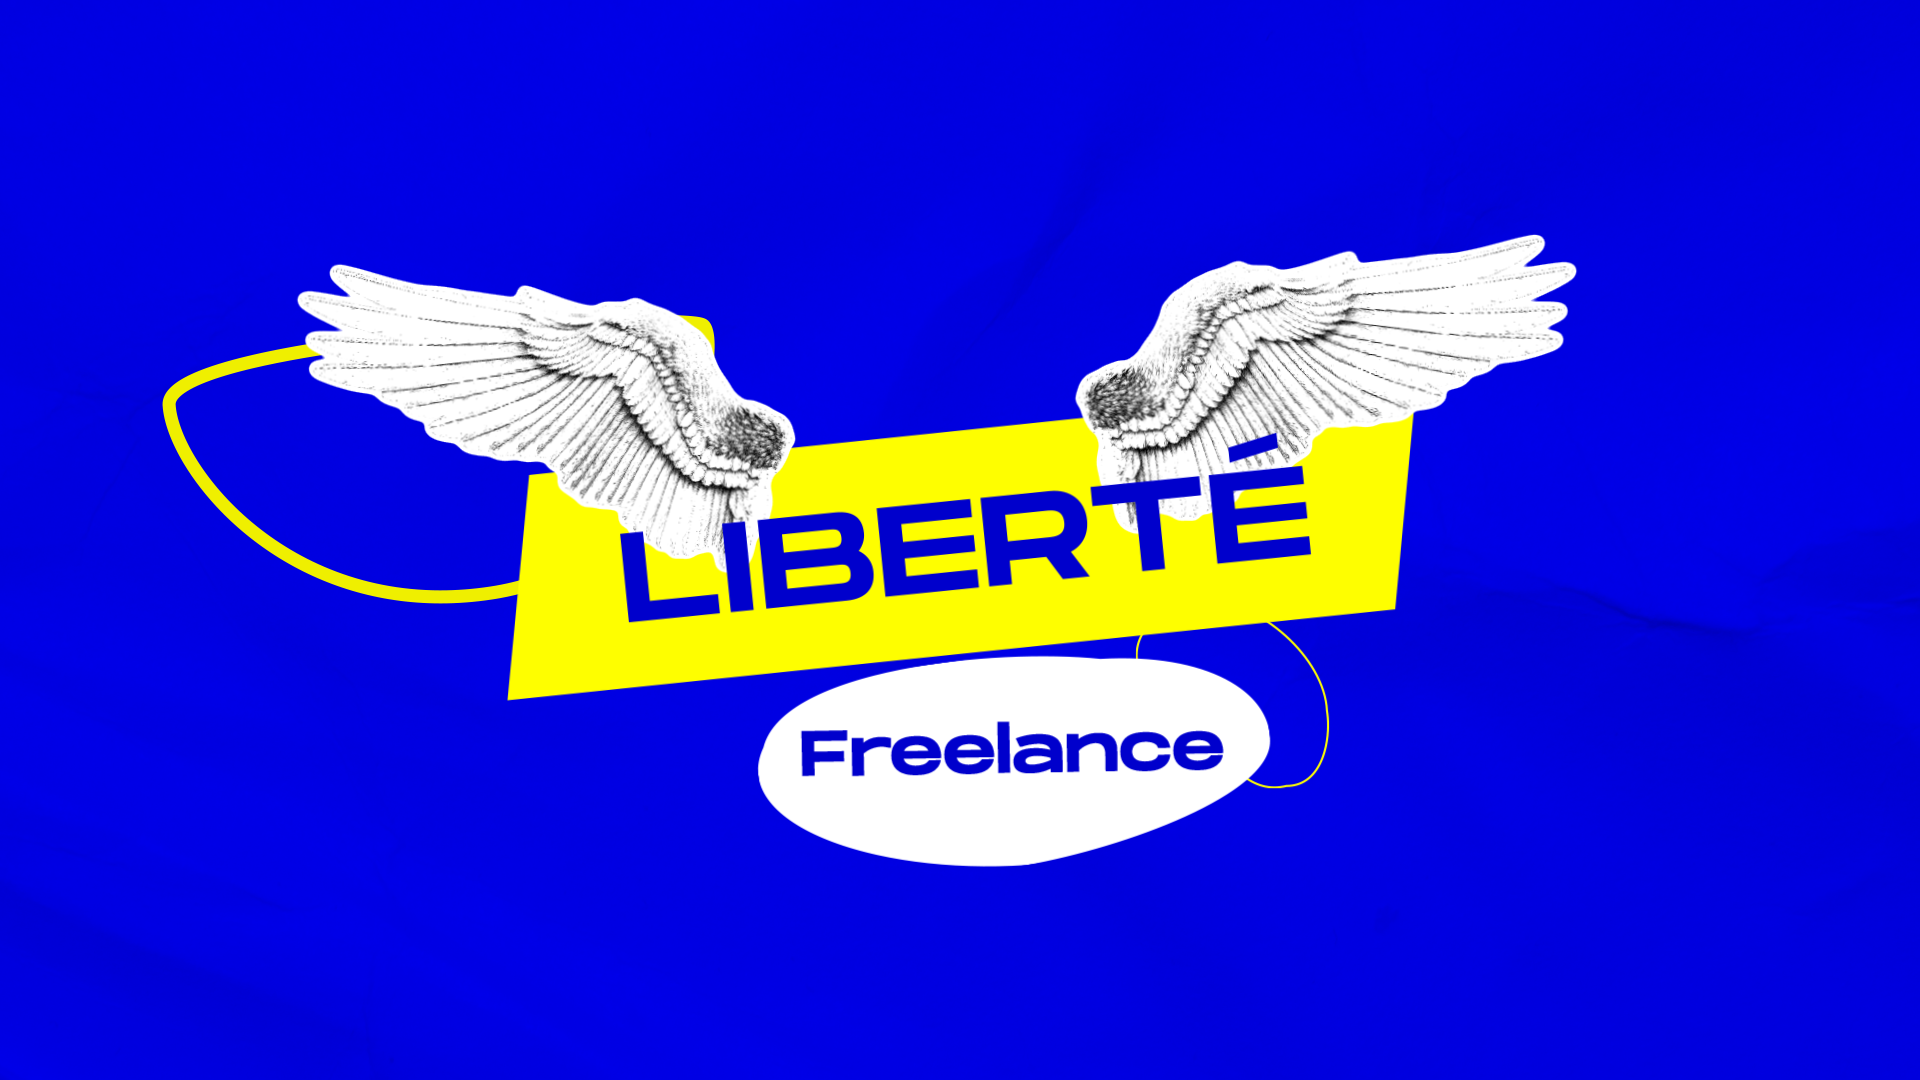 Liberté freelance